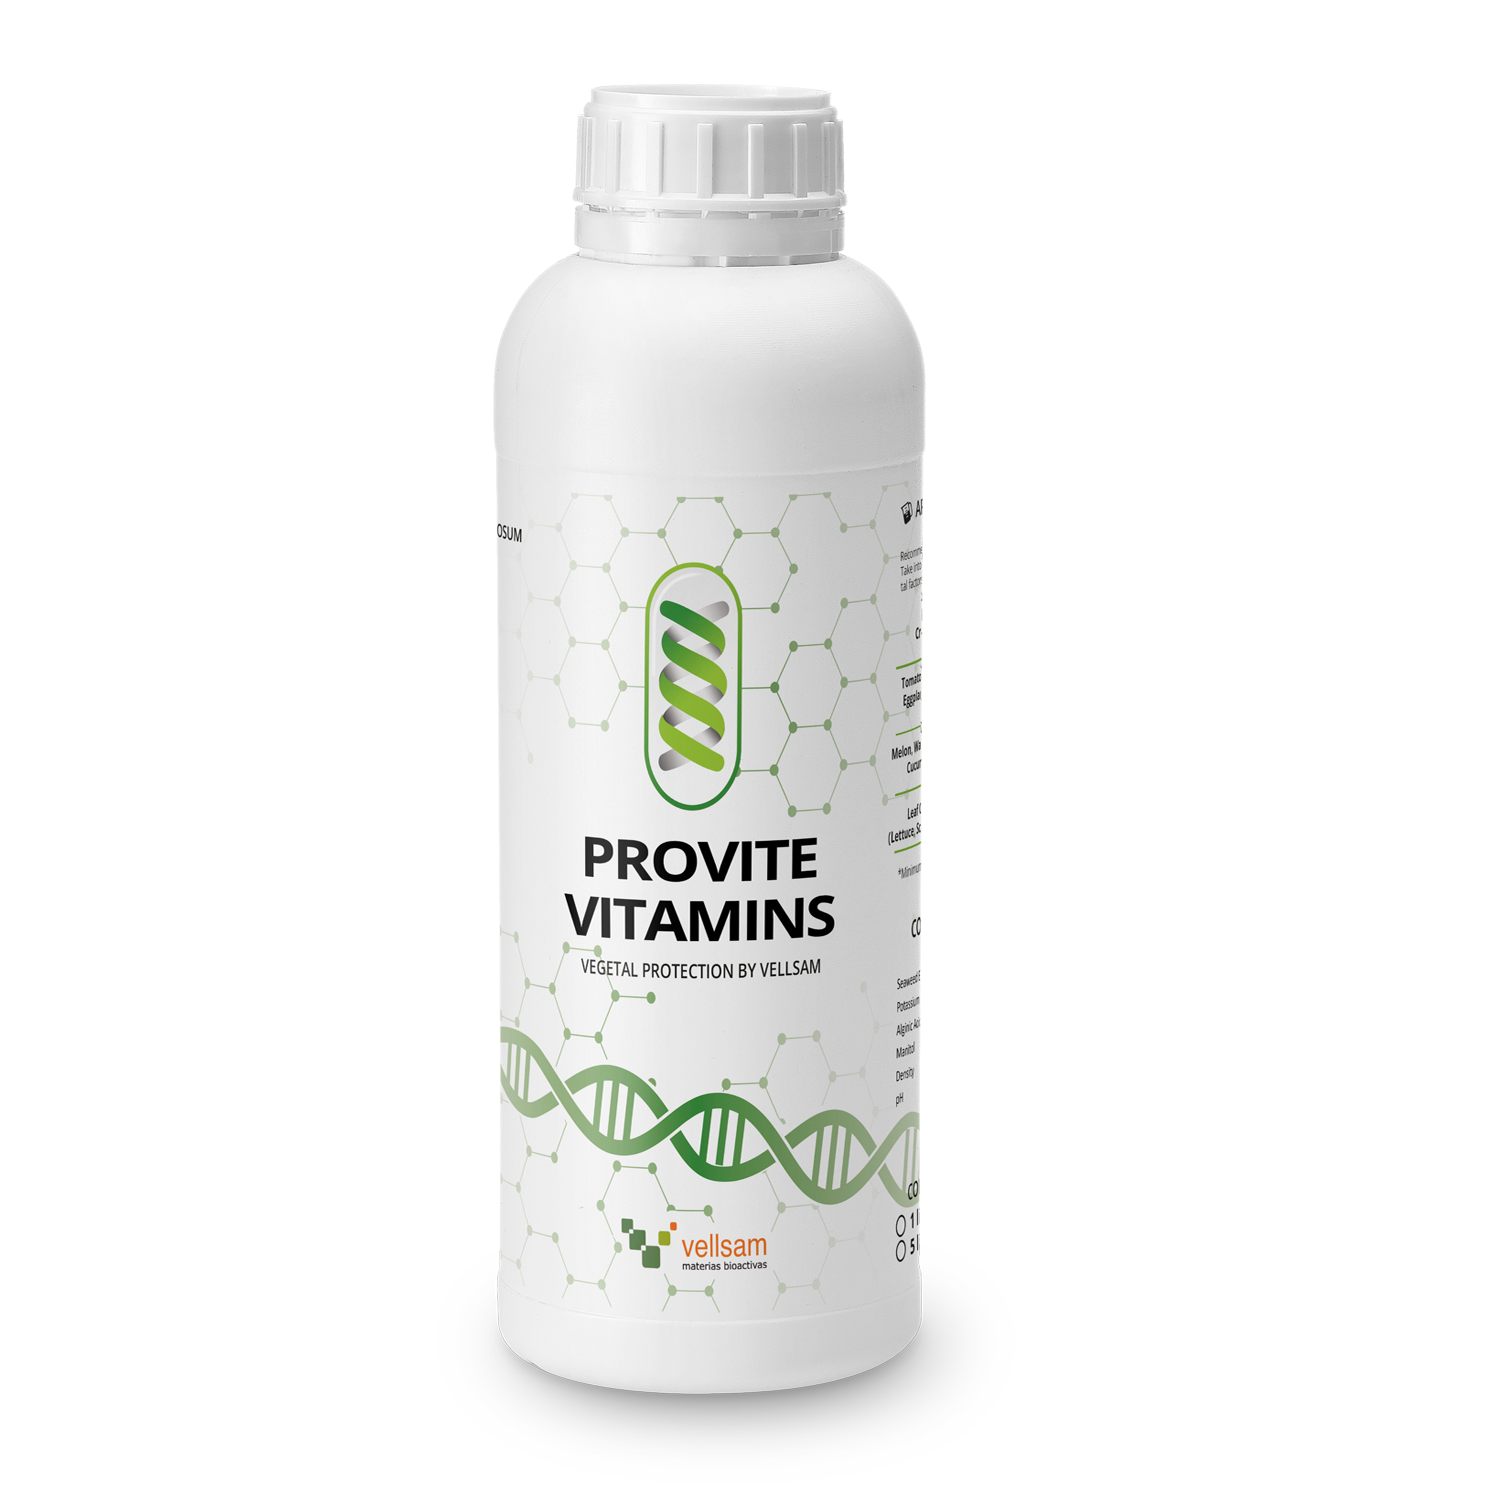 Provite Vitamins - Ovaj proizvod služi kao pokretač fizioloških procesa biljke tako što izaziva brzu i intenzivnu energetsku reakciju kojom biljka postiže optimalan razvoj u stresnim okolnostima.